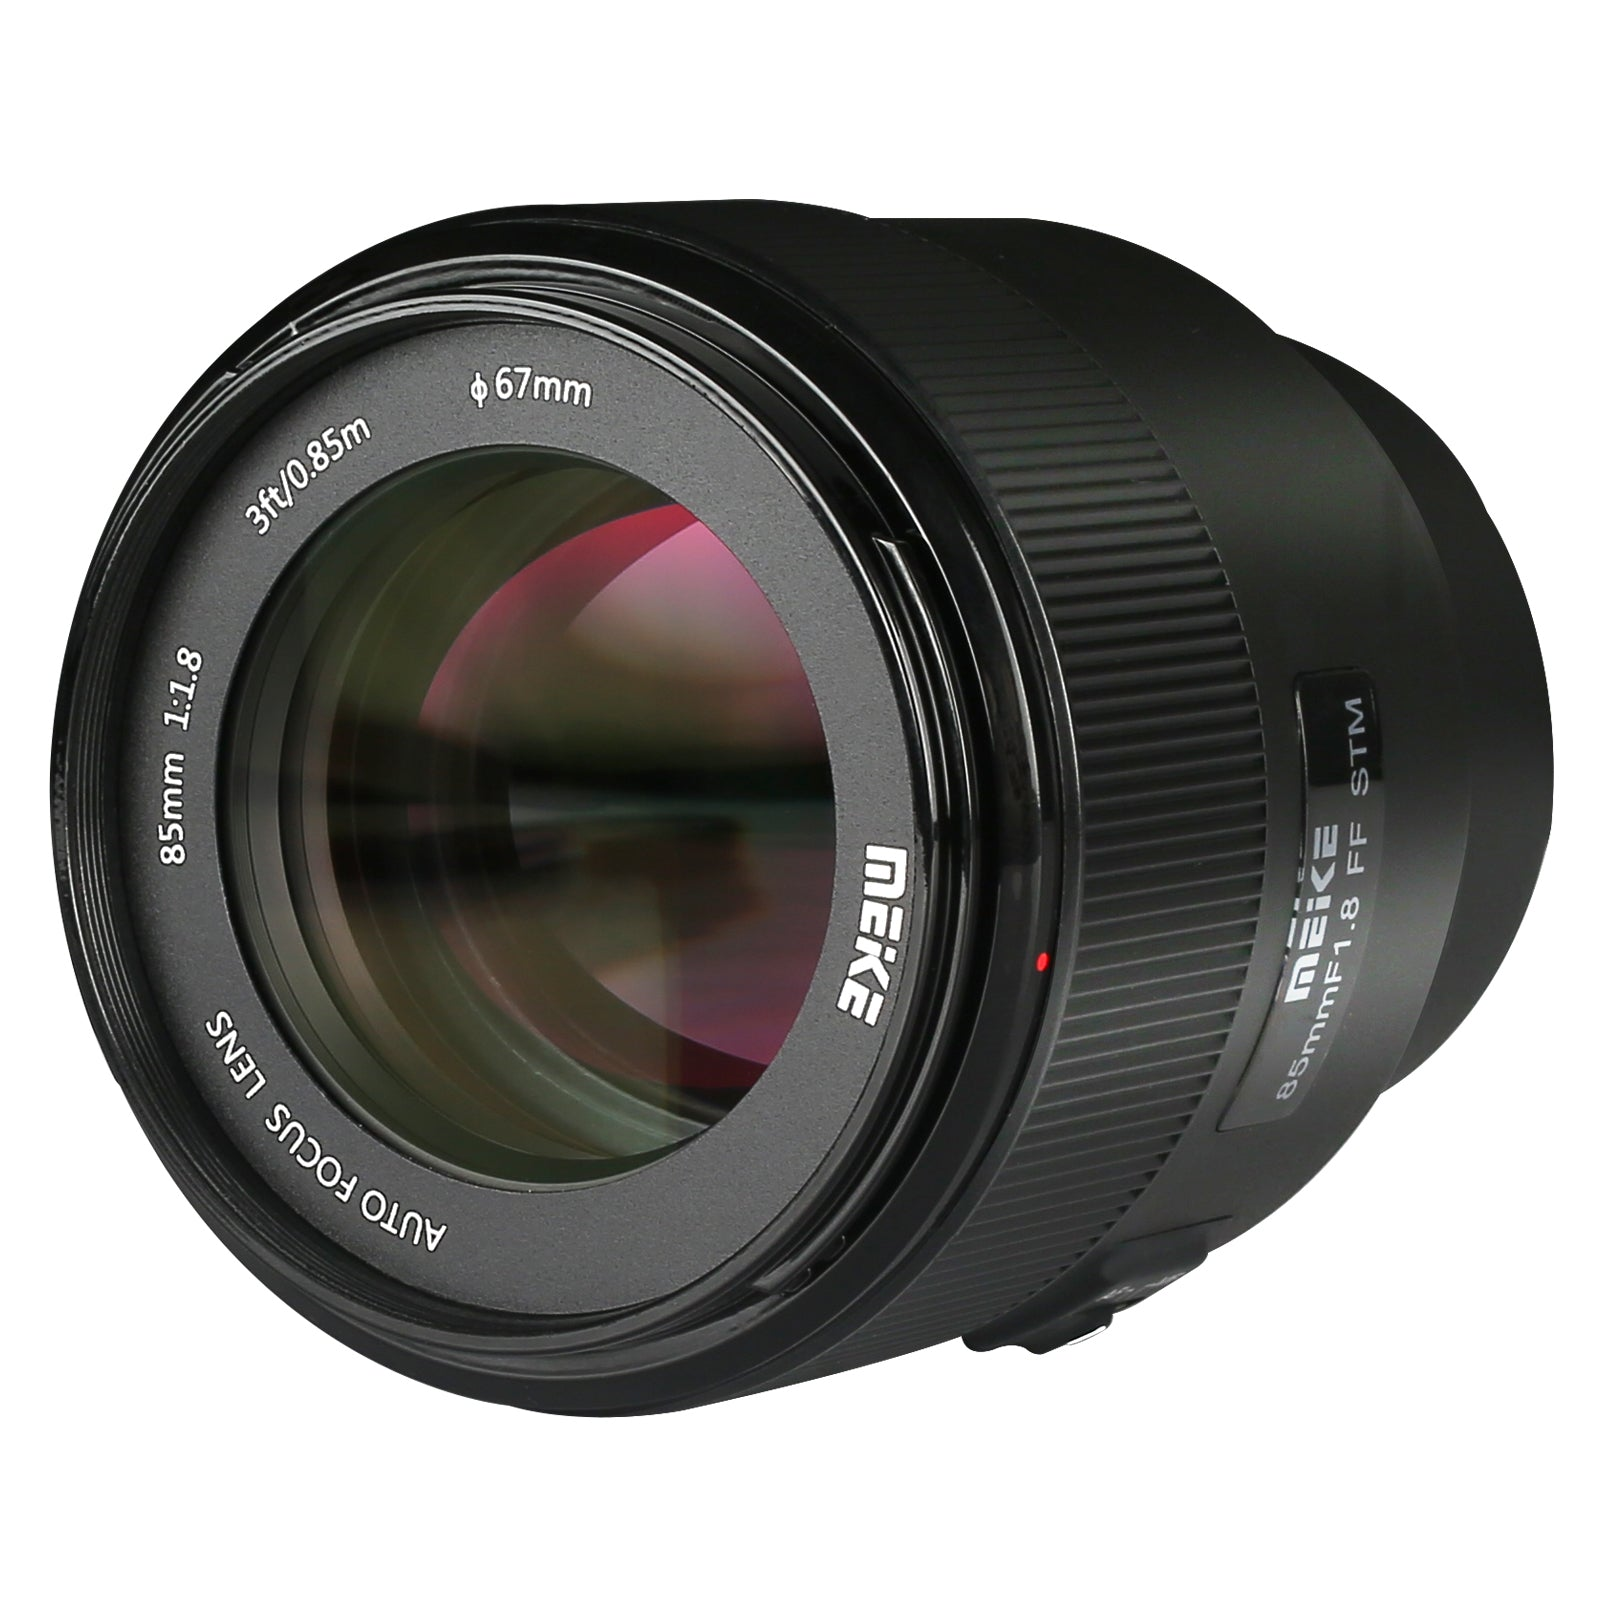 Meike 85mm F1.8 Auto Focus STM Full Frame Lens for Sony E